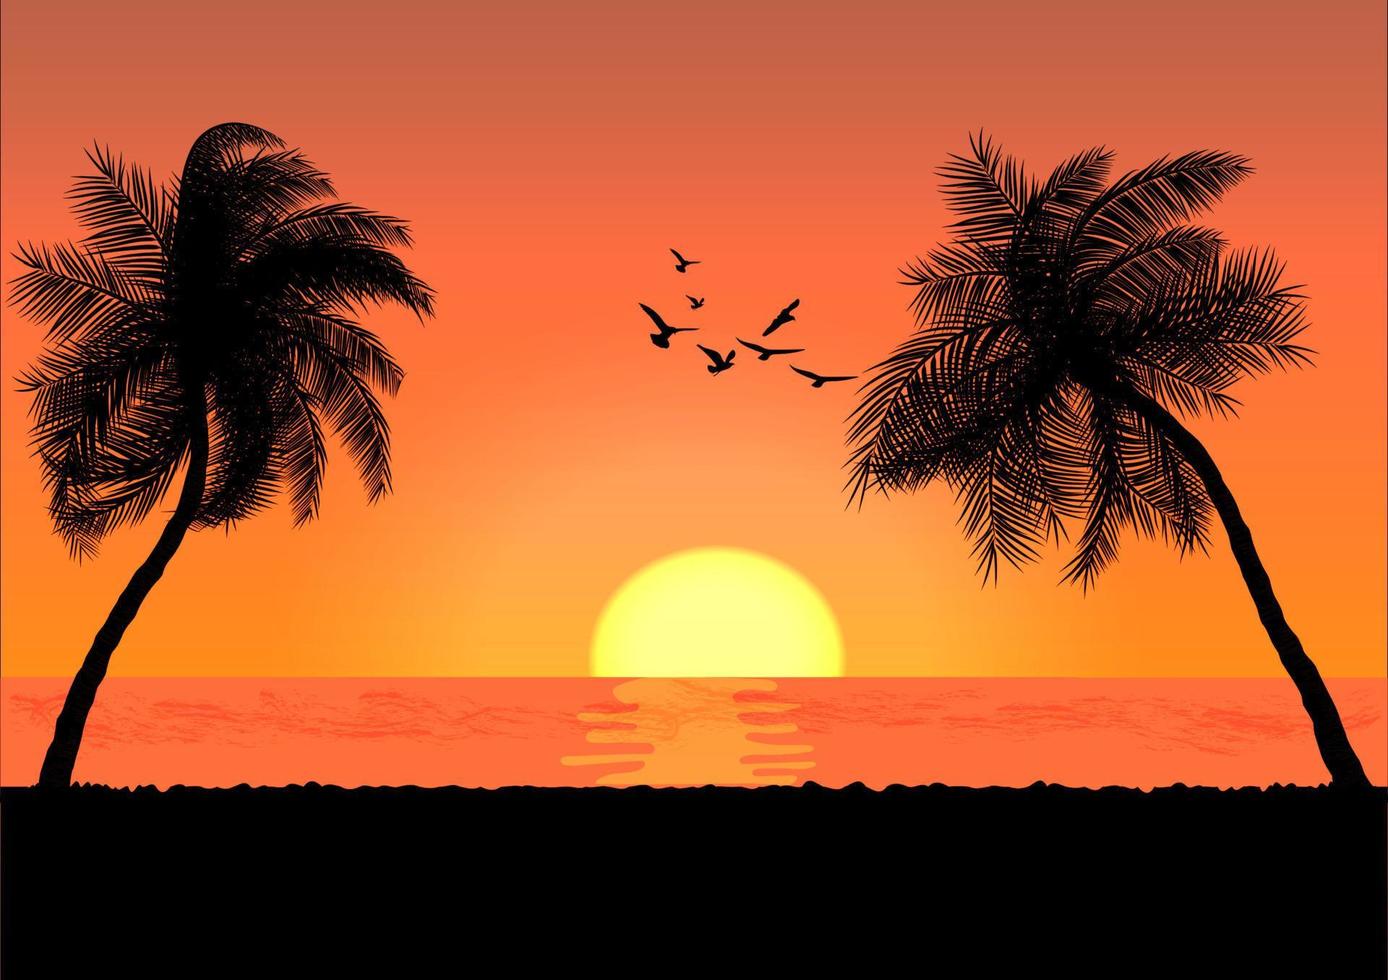 Landschaftsansicht Zeichnung Palme mit Sonnenuntergang oder Sonnenaufgang Hintergrund Vektor Illustration Konzept romantisch